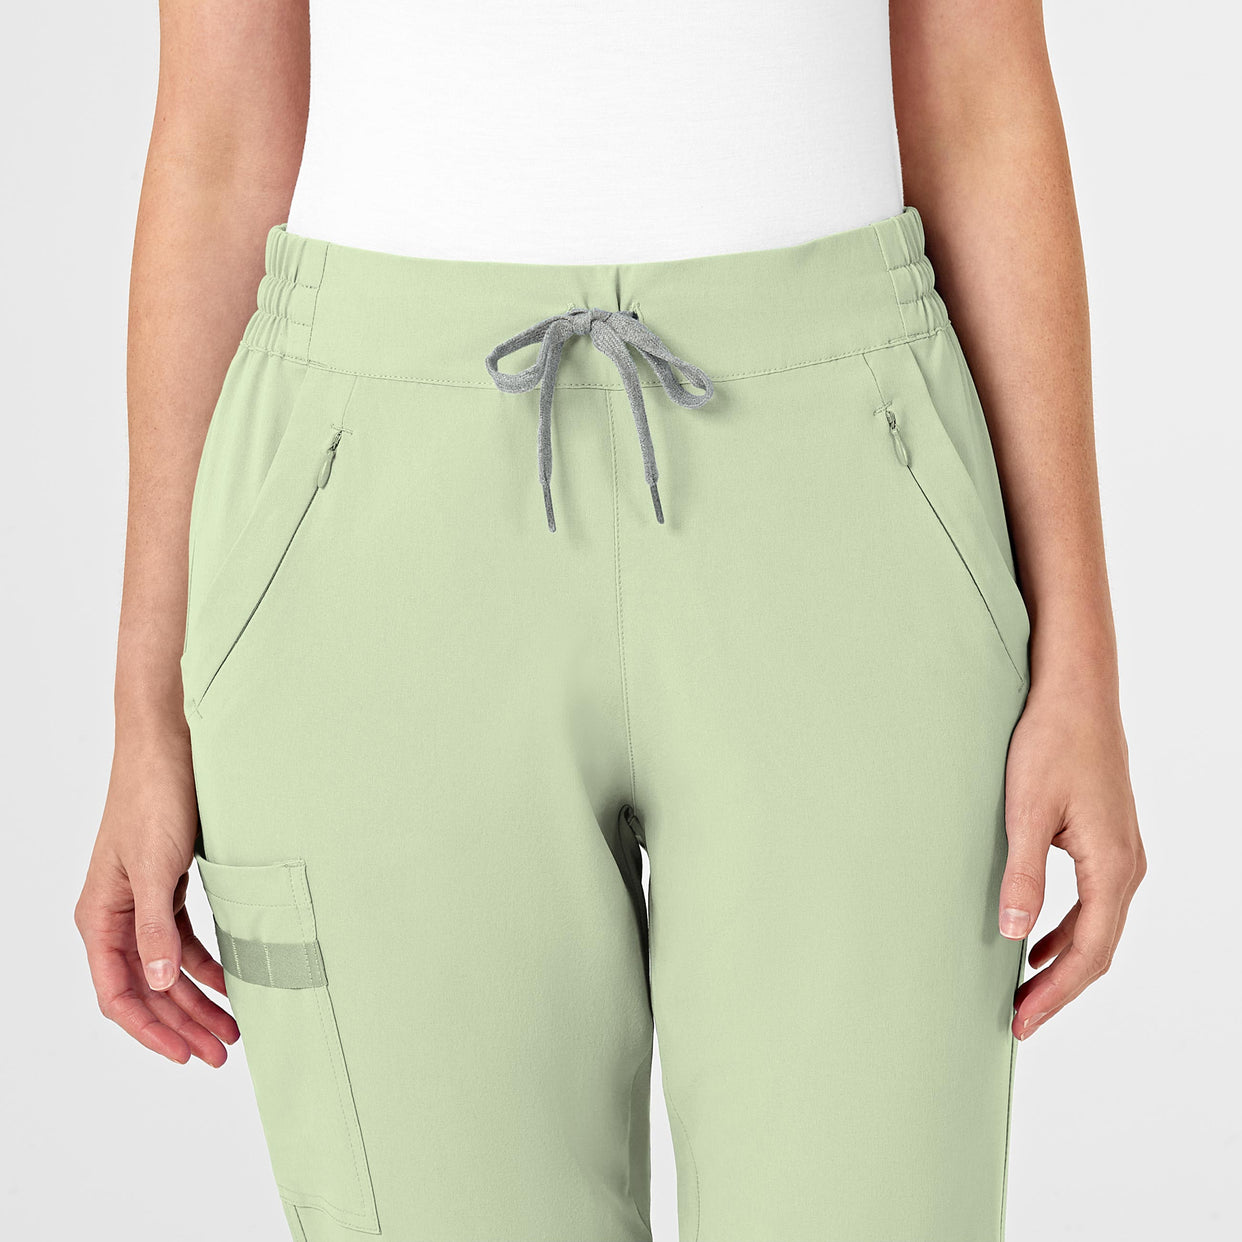 RENEW Women's Jogger Scrub Pant Fresh Mint front detail